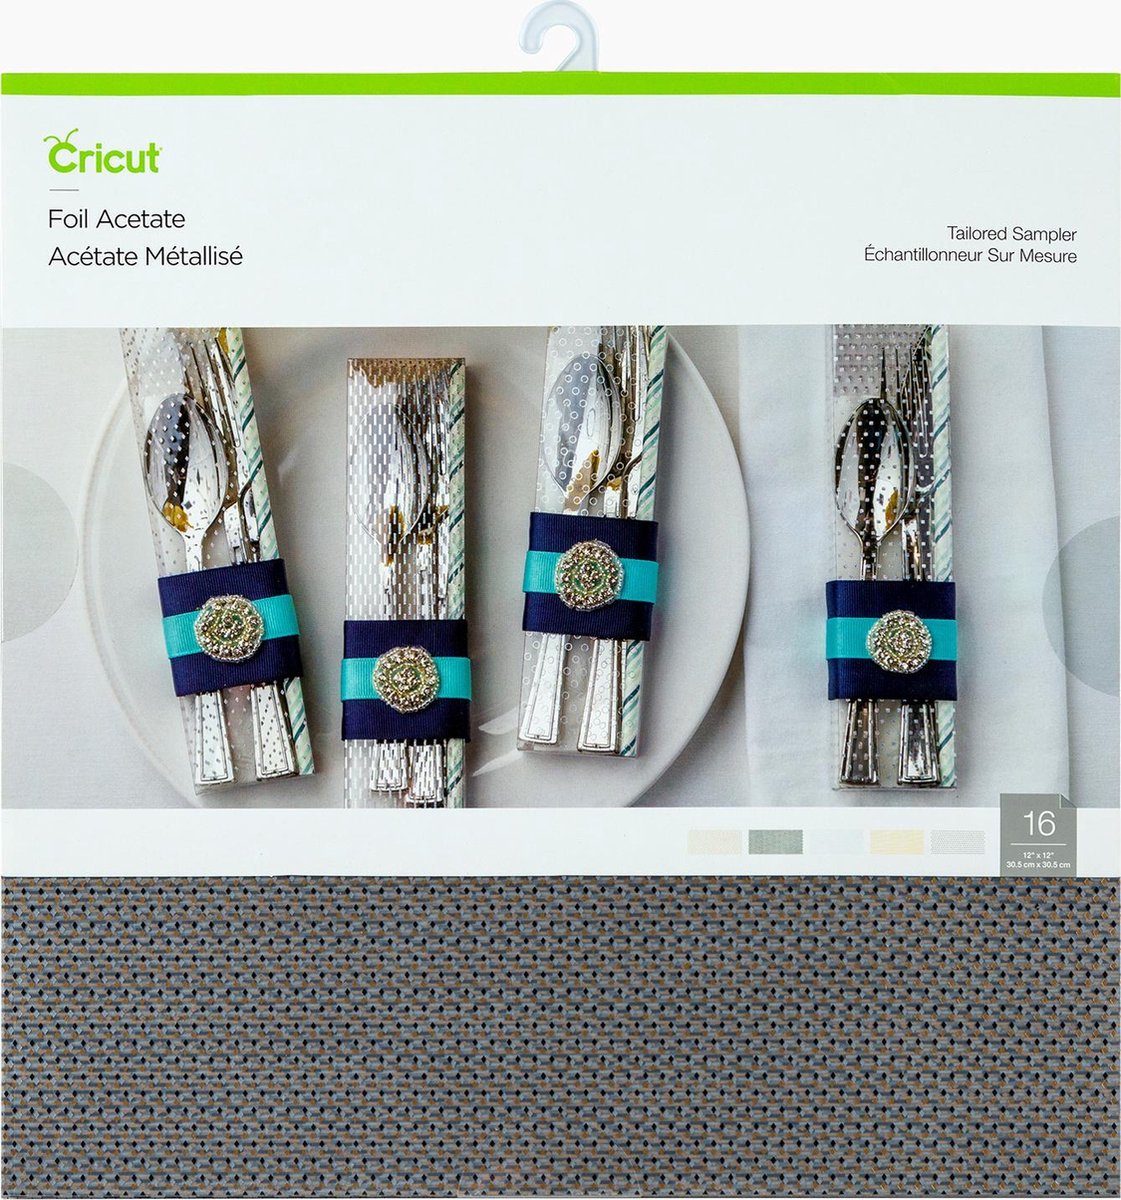 Cricut - Folieacetaat sampler op maat gemaakt